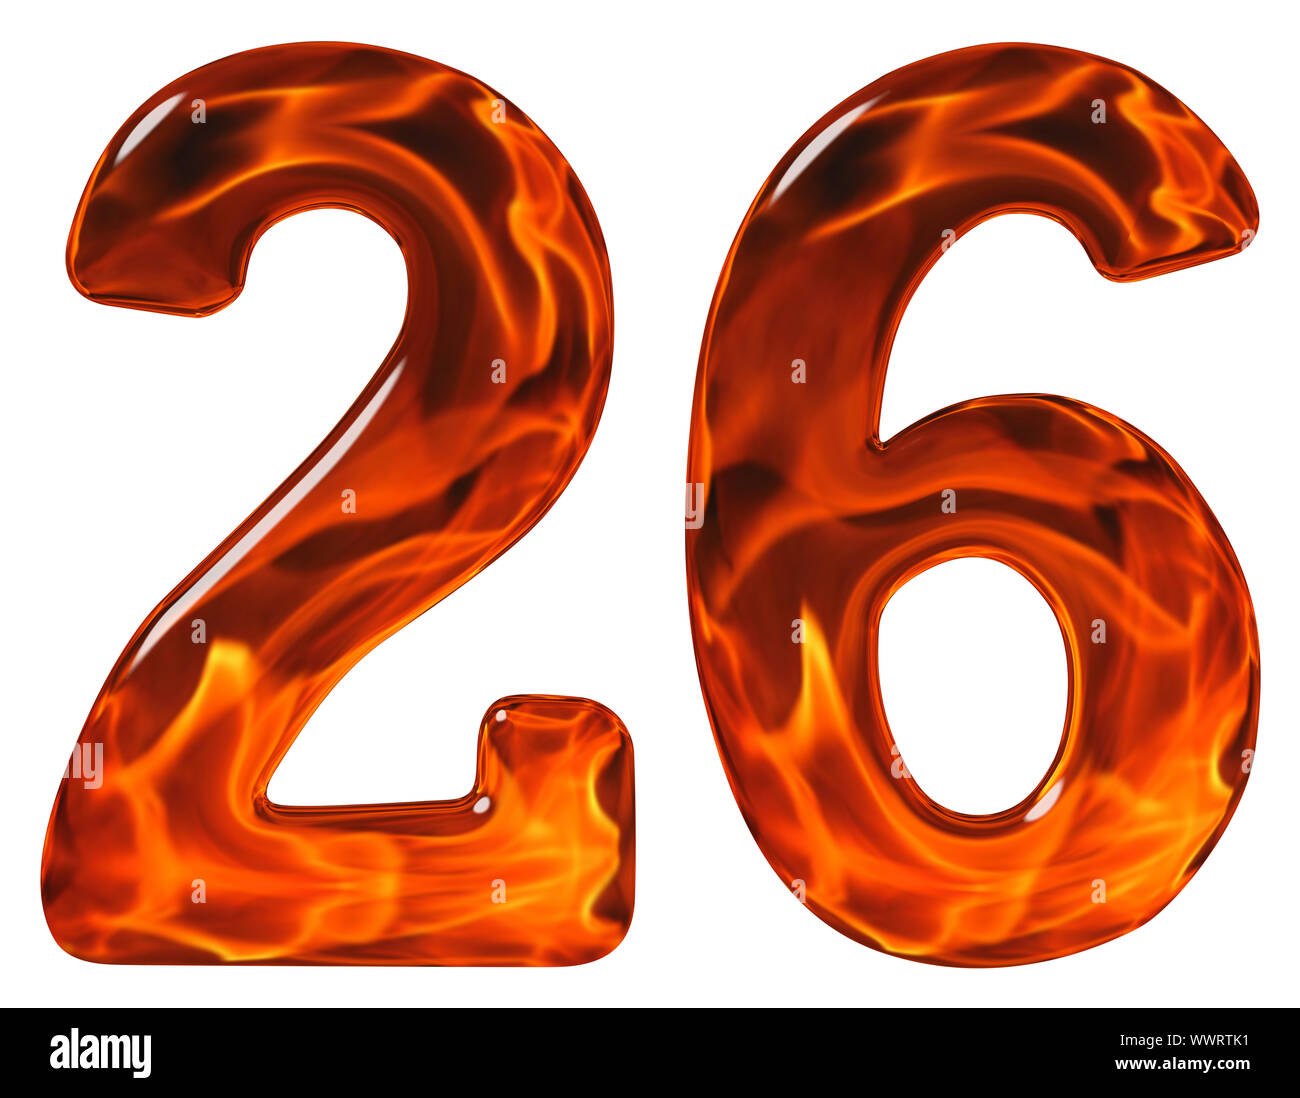 26, twenty six, numeral, imitation glass and a blazing fire